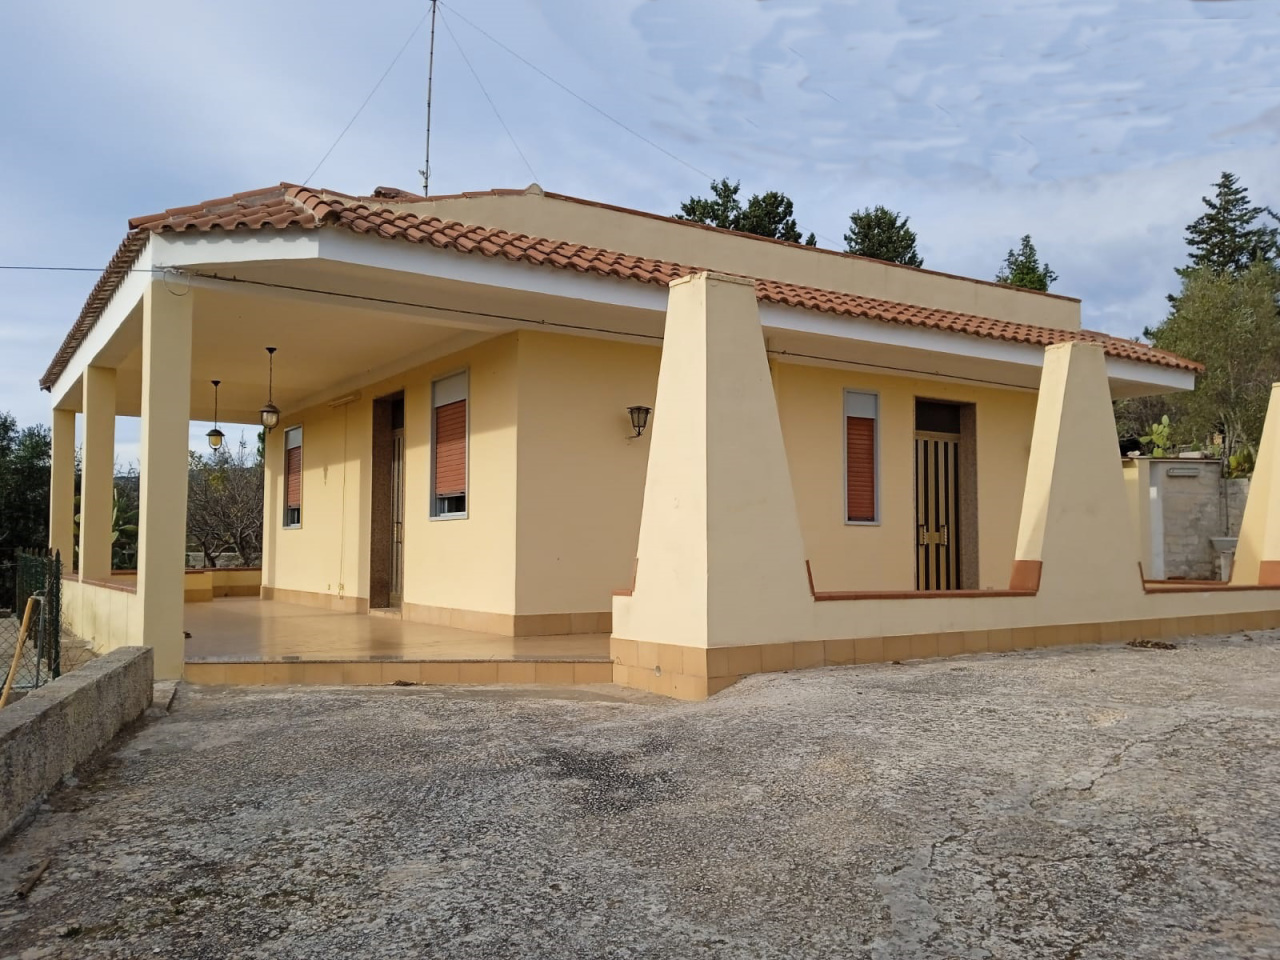 Villa in vendita a Canicattini Bagni, 3 locali, prezzo € 150.000 | PortaleAgenzieImmobiliari.it